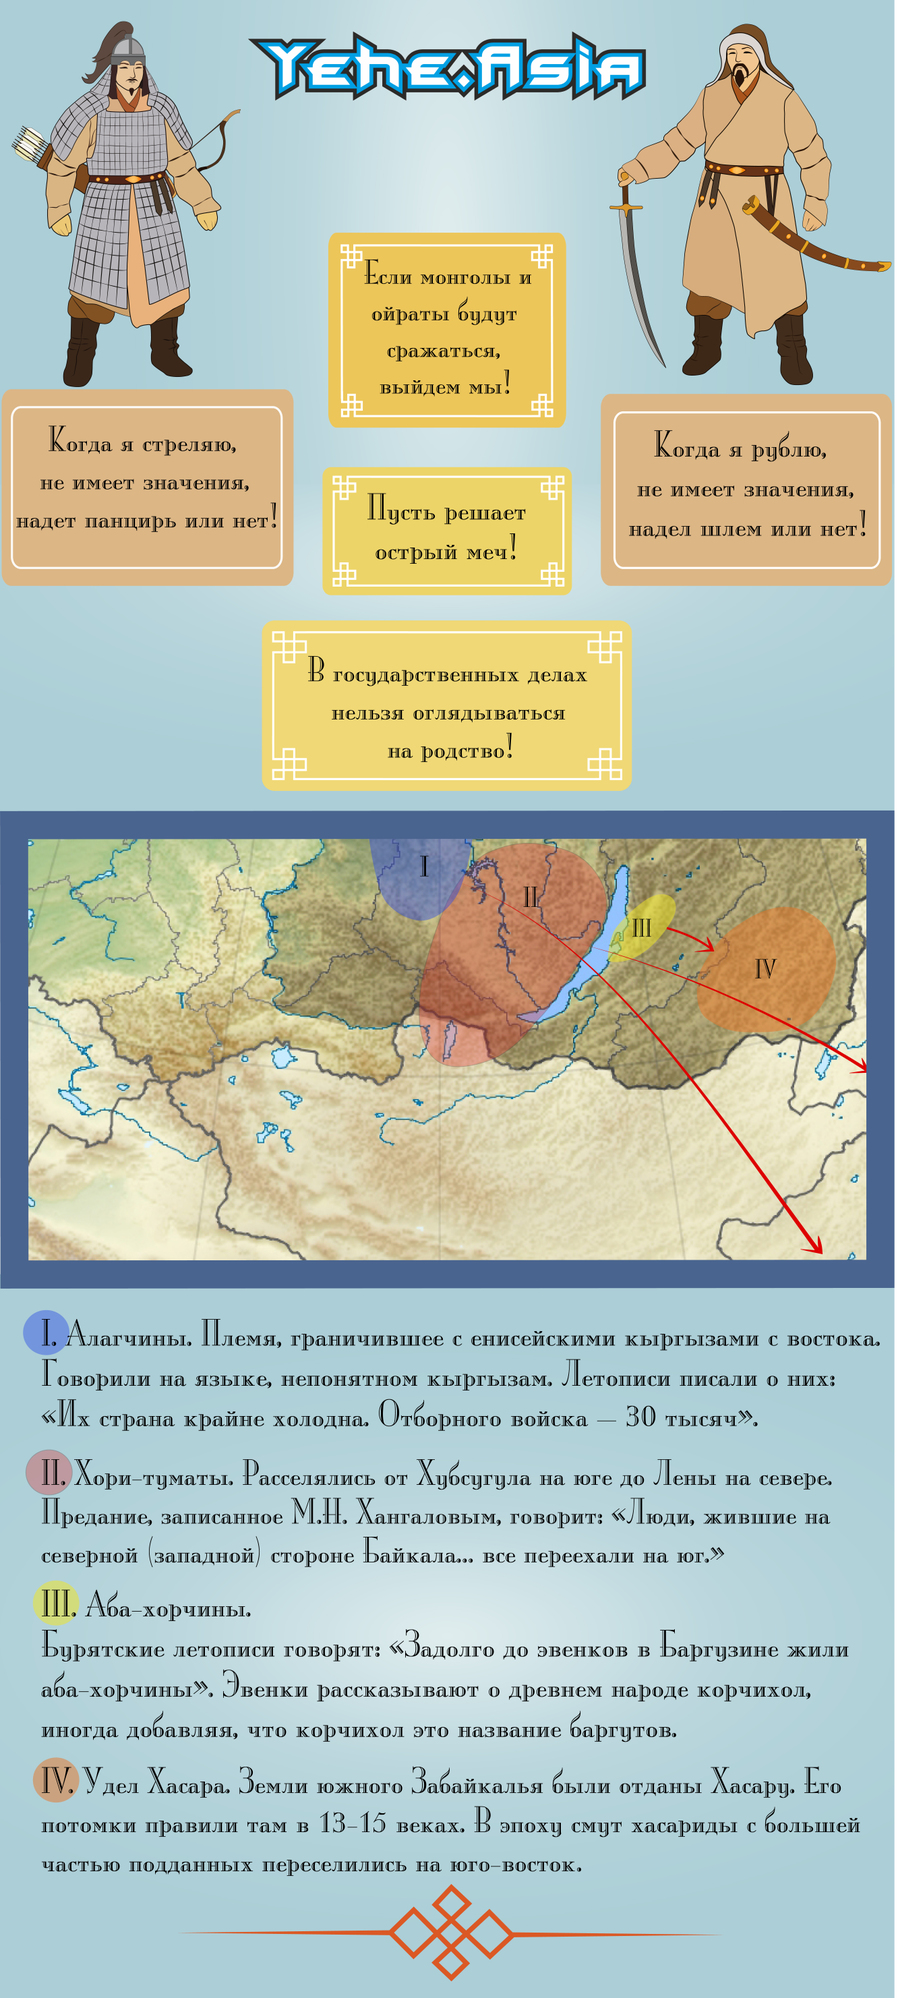 Доклад по теме Общие сведения о монголах